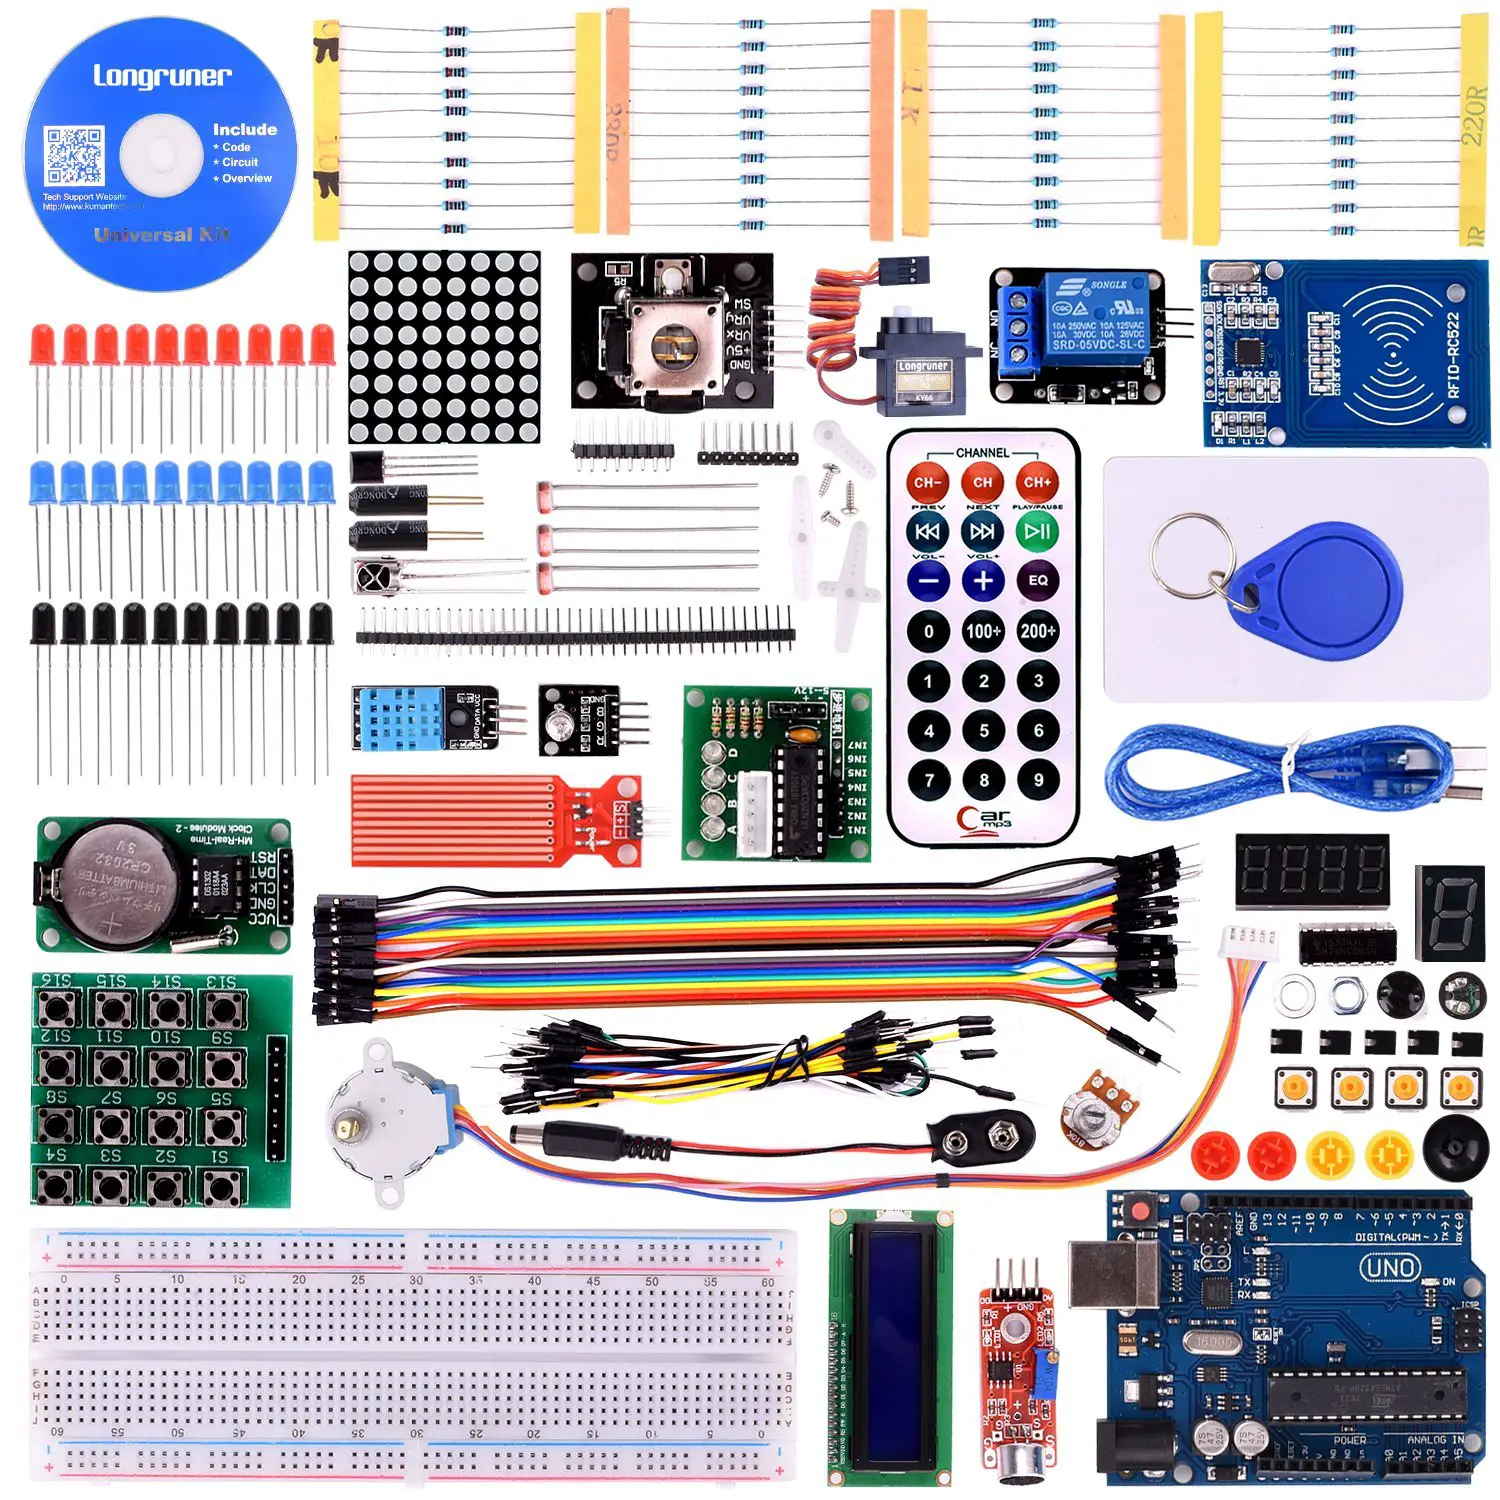 8 Best Arduino Starter Kit for Beginner - Arduino UNO R3 Kit